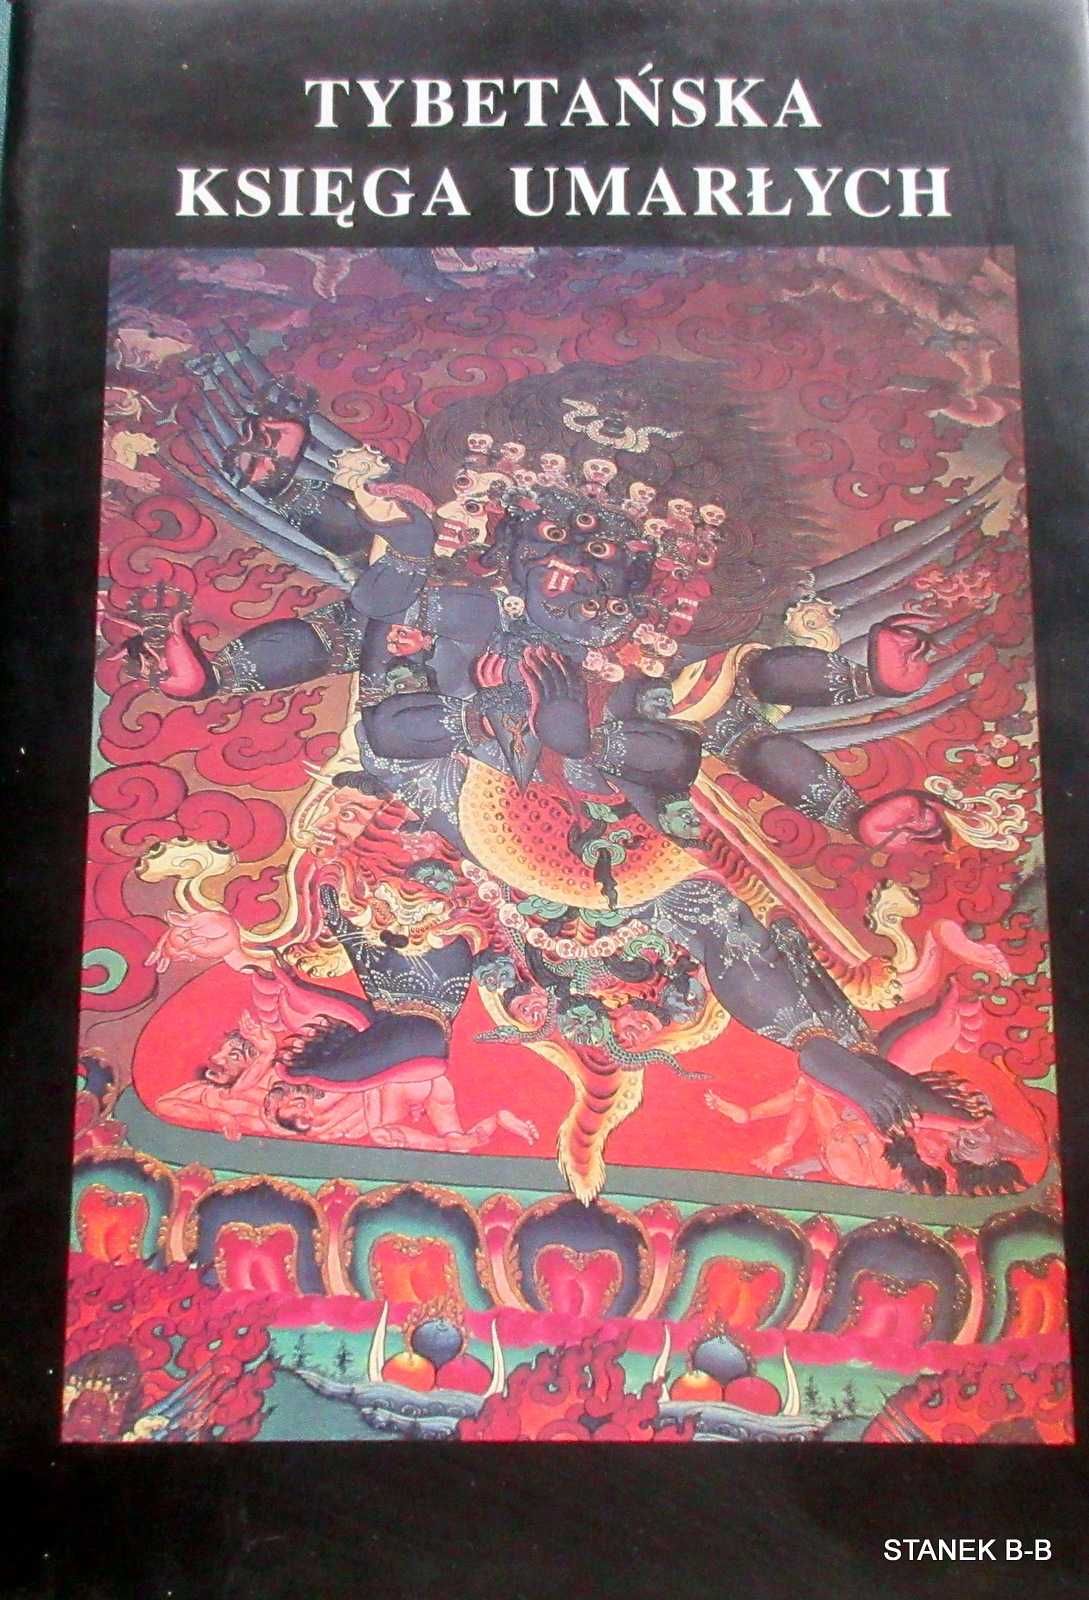 Tybetańska księga umarłych
Praca Zbiorowa